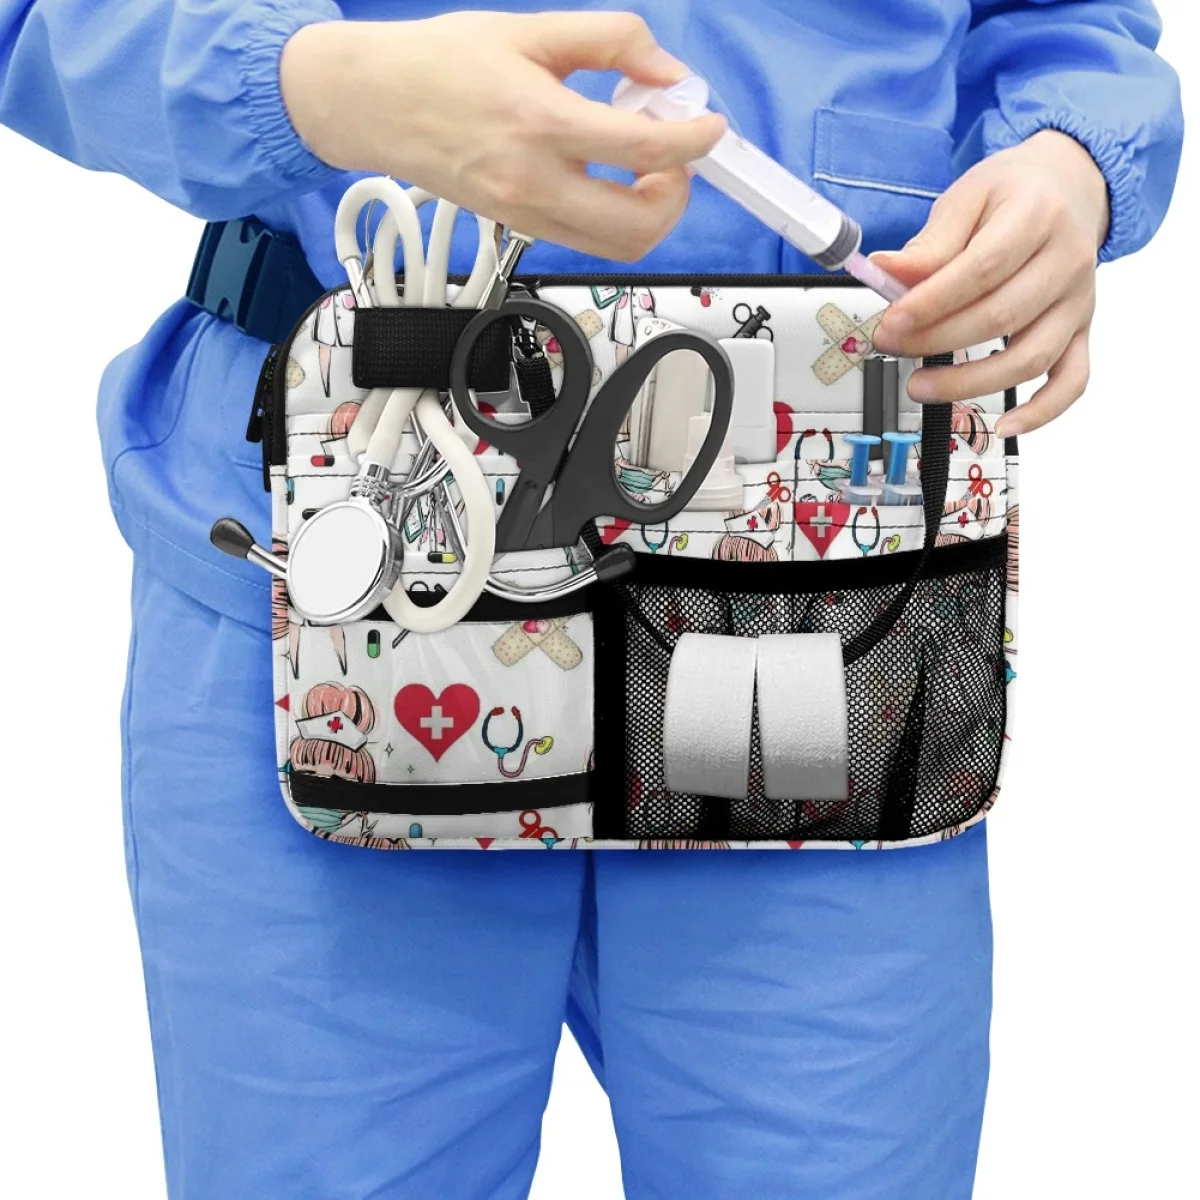  Új EMT EMS mentősök mintája többrétegű kétrétegű belső zsebek derékcsomag kényelmes fogantyú munka nővér zseb crossbody táska - 3